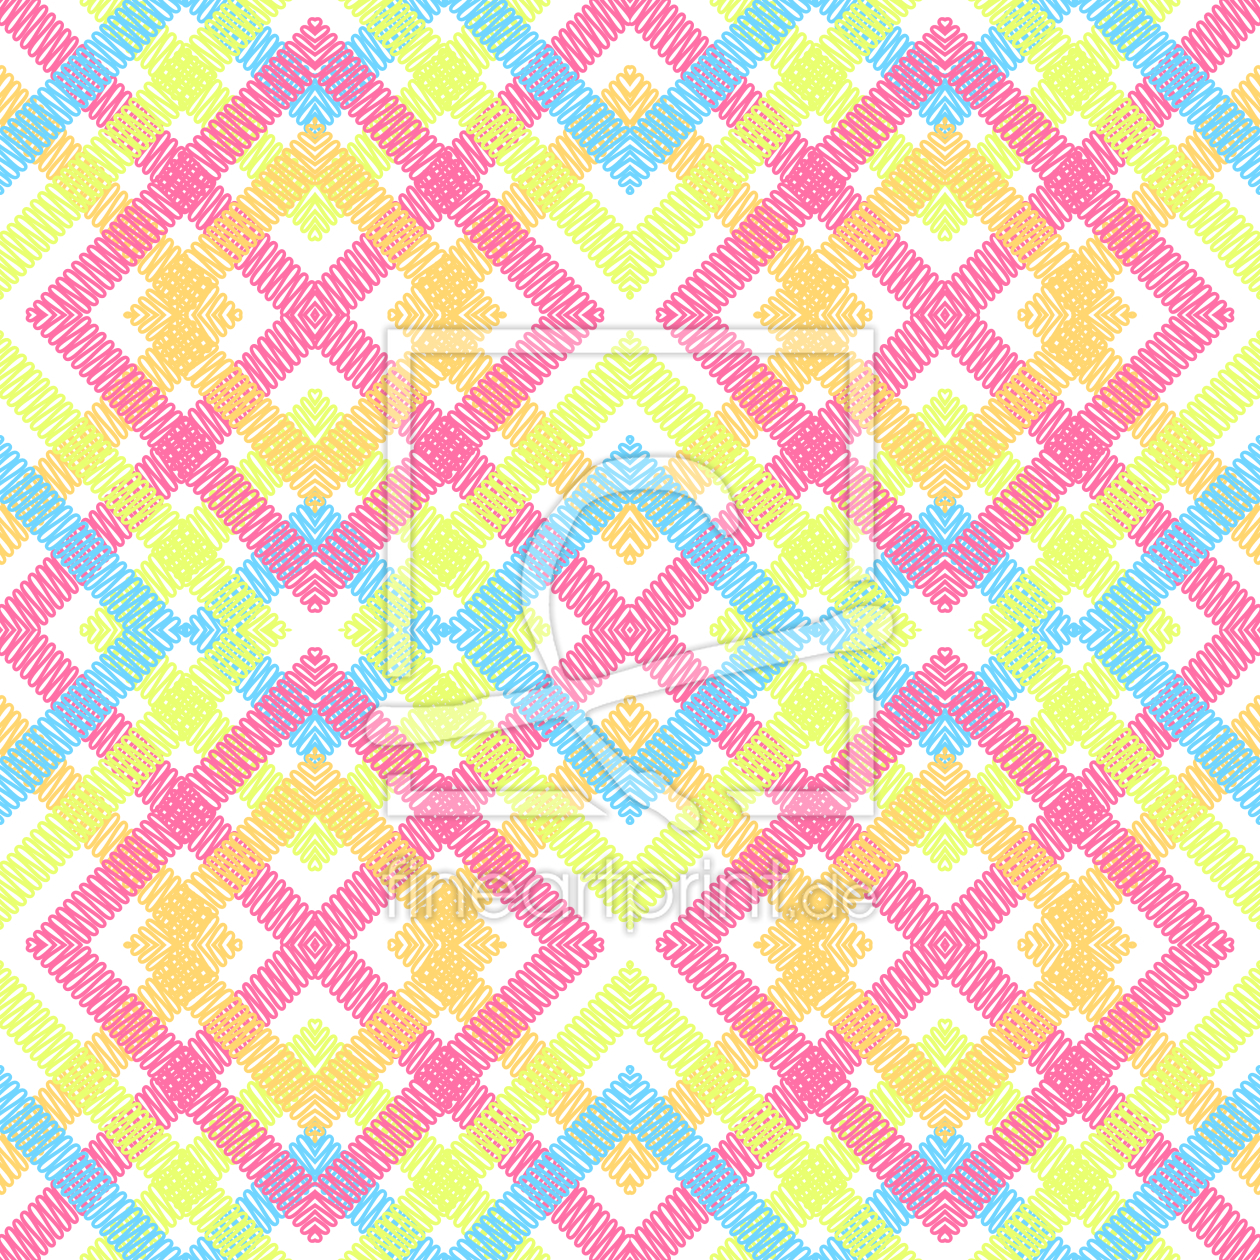 Bild-Nr.: 9015217 Funky Argyle erstellt von patterndesigns-com